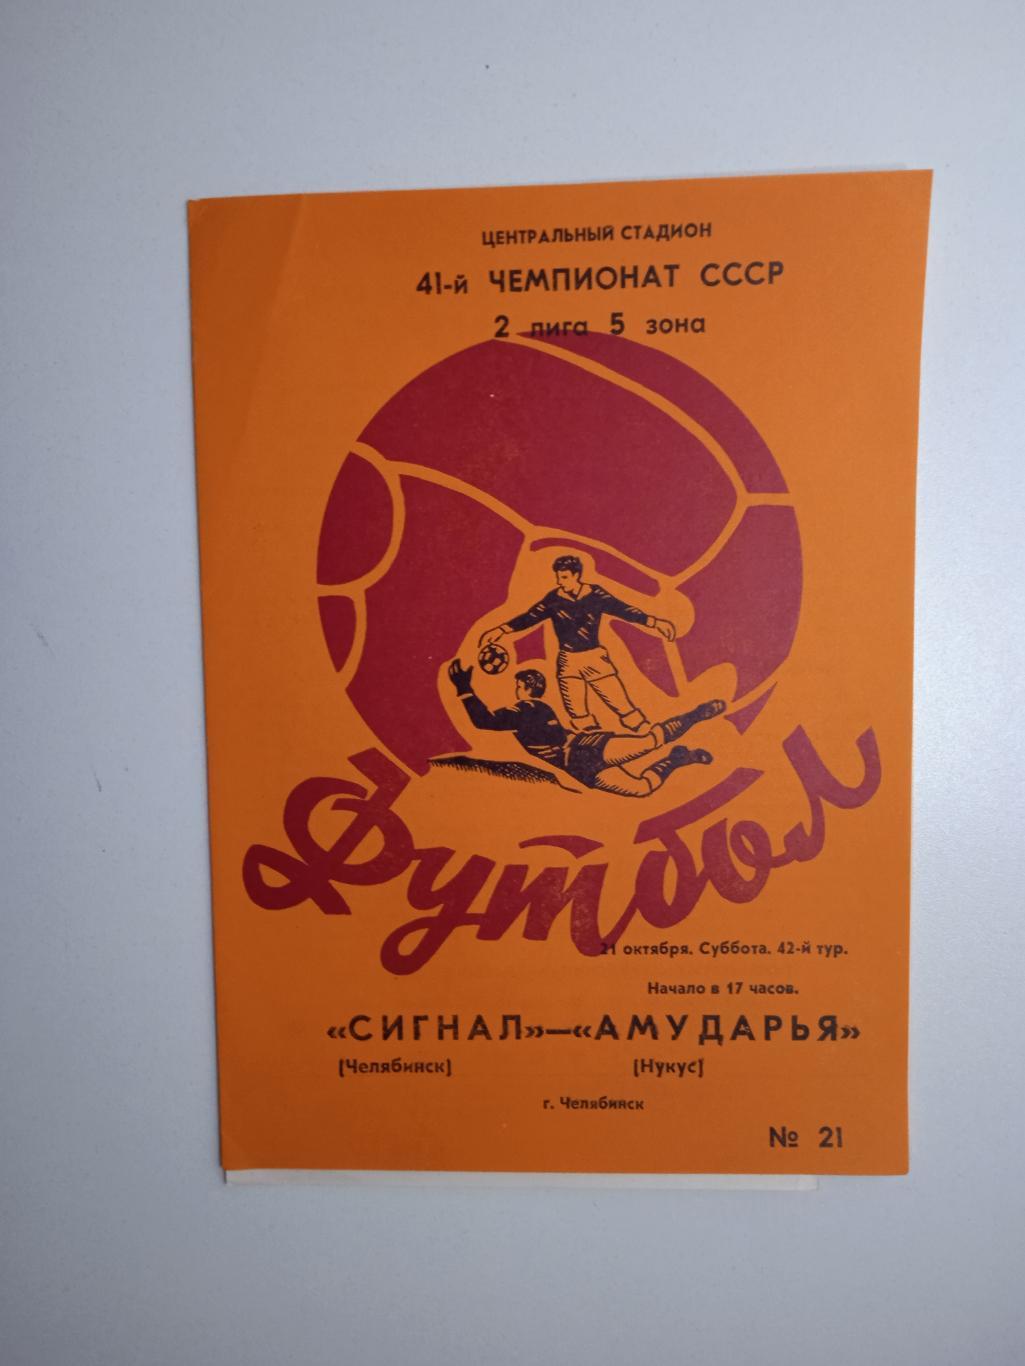 Сигнал Челябинск - Амударья Нукус 1978